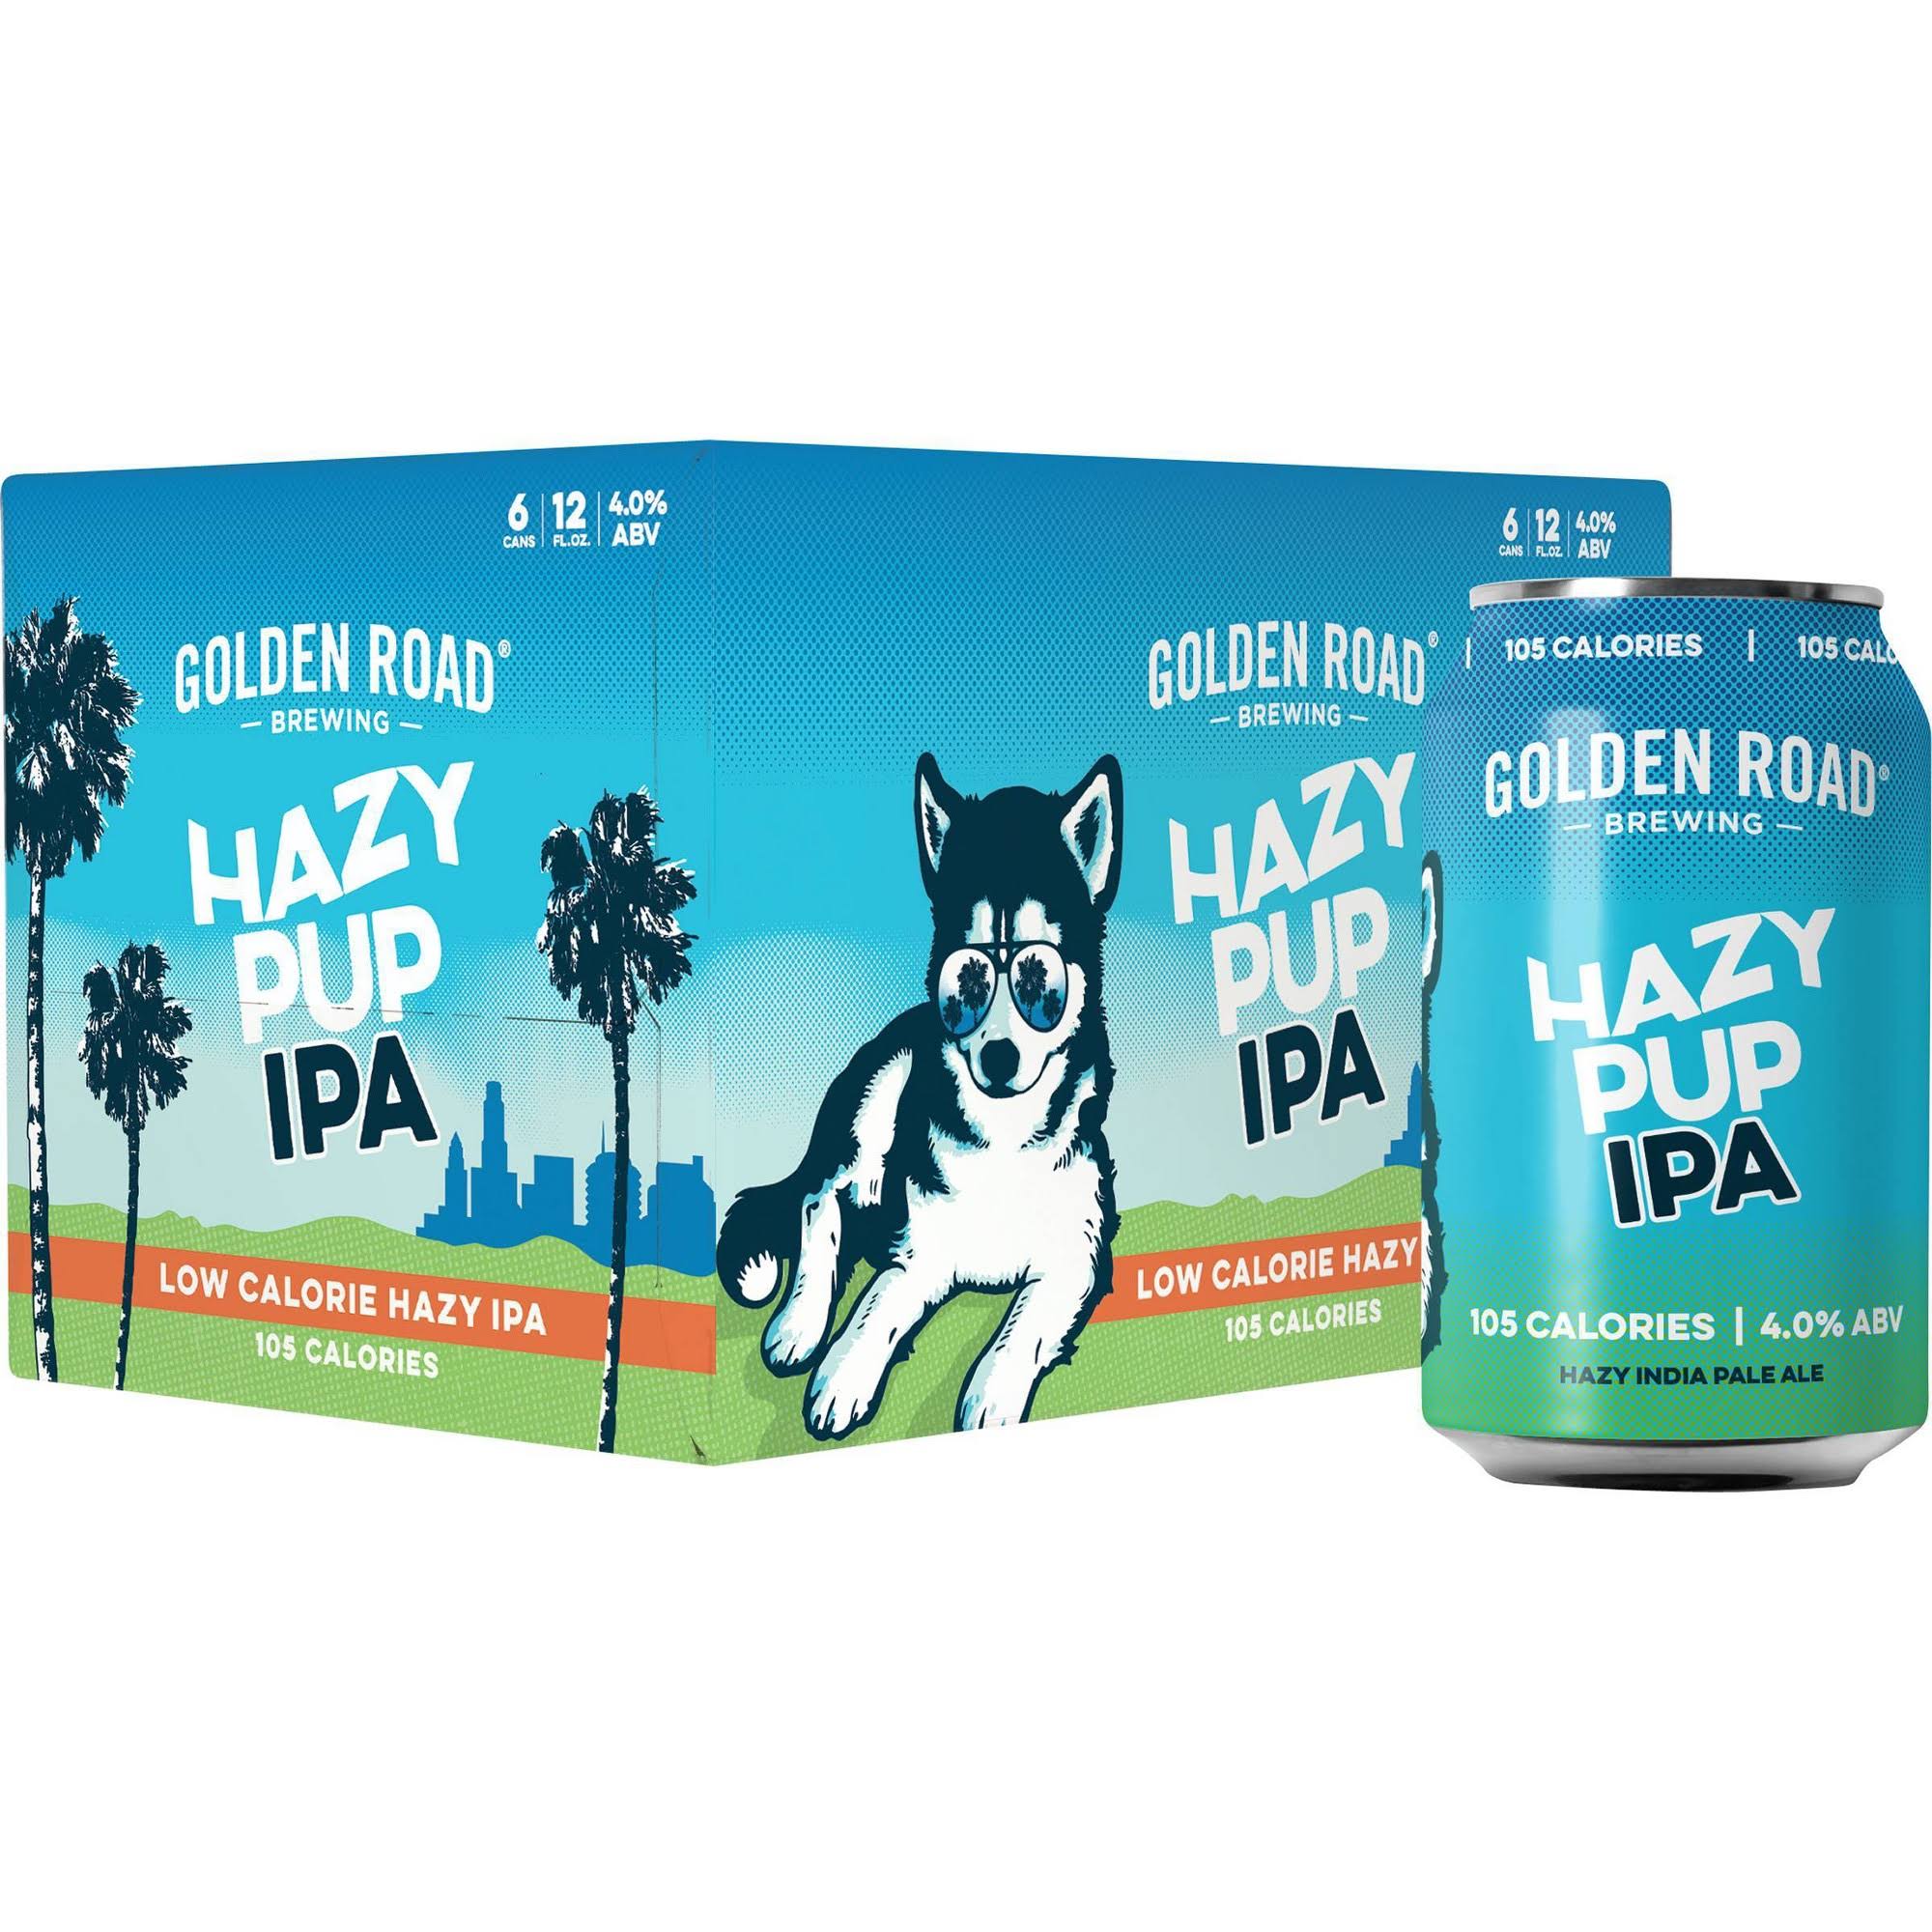 Golden Road Ride On Beer, IPA, 10 Hop Hazy - 6 pack, 12 fl oz cans